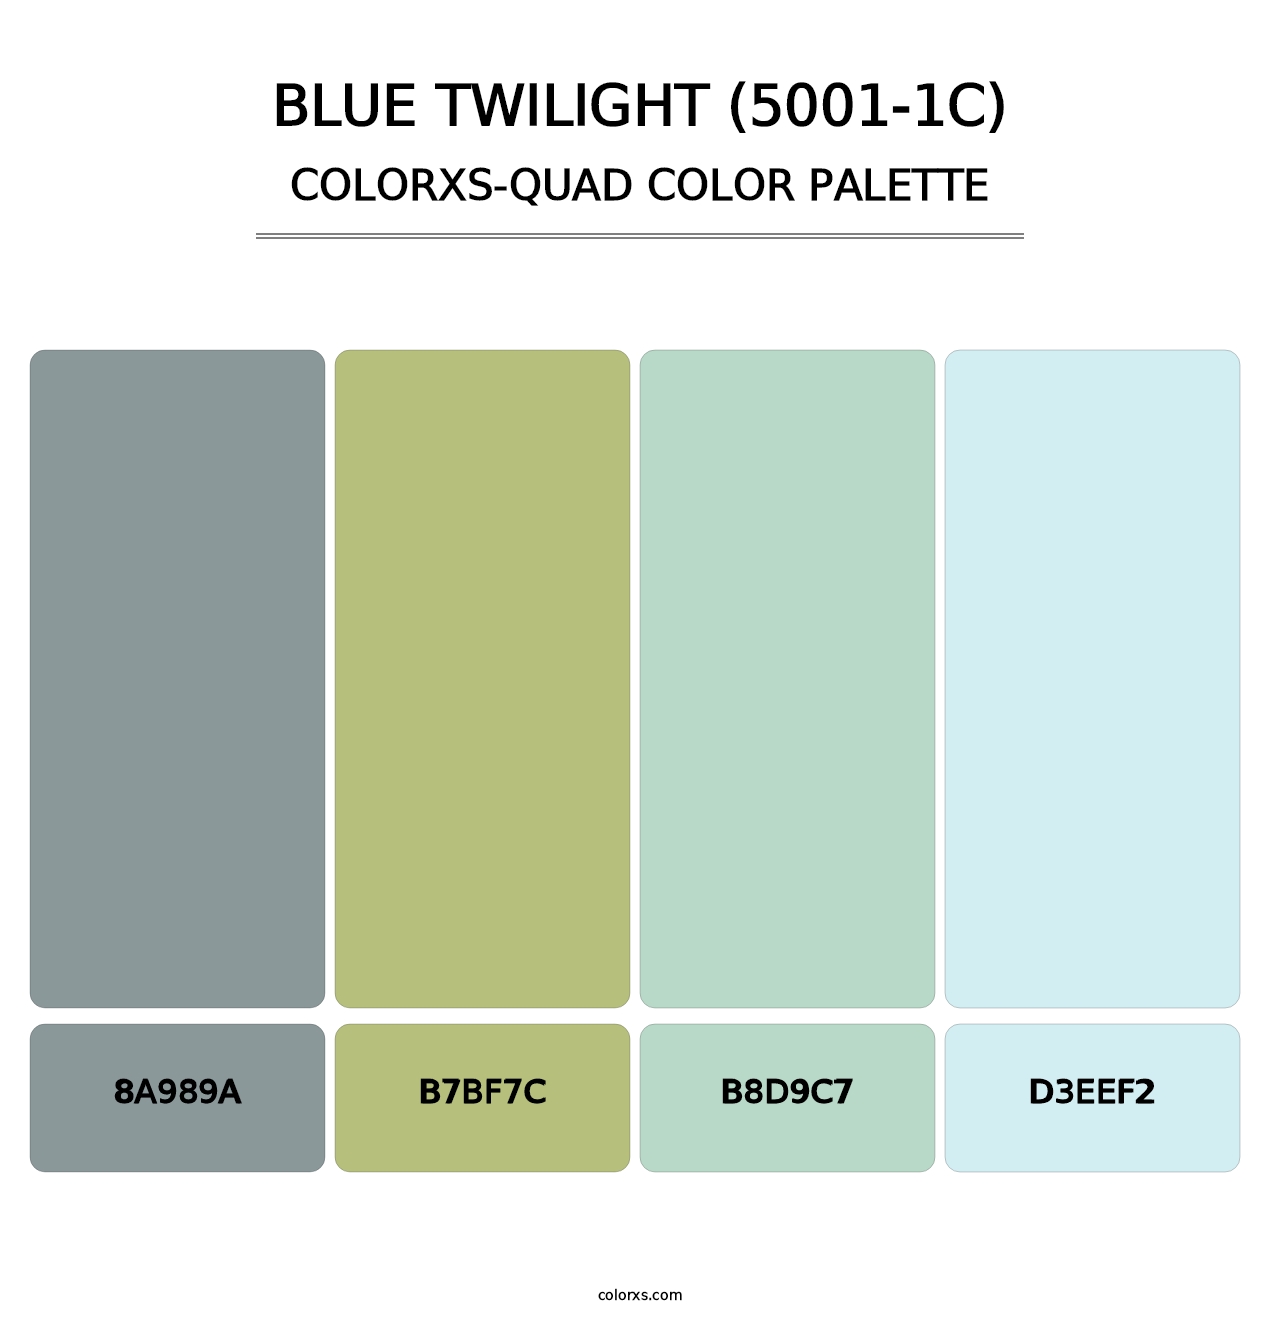 Blue Twilight (5001-1C) - Colorxs Quad Palette